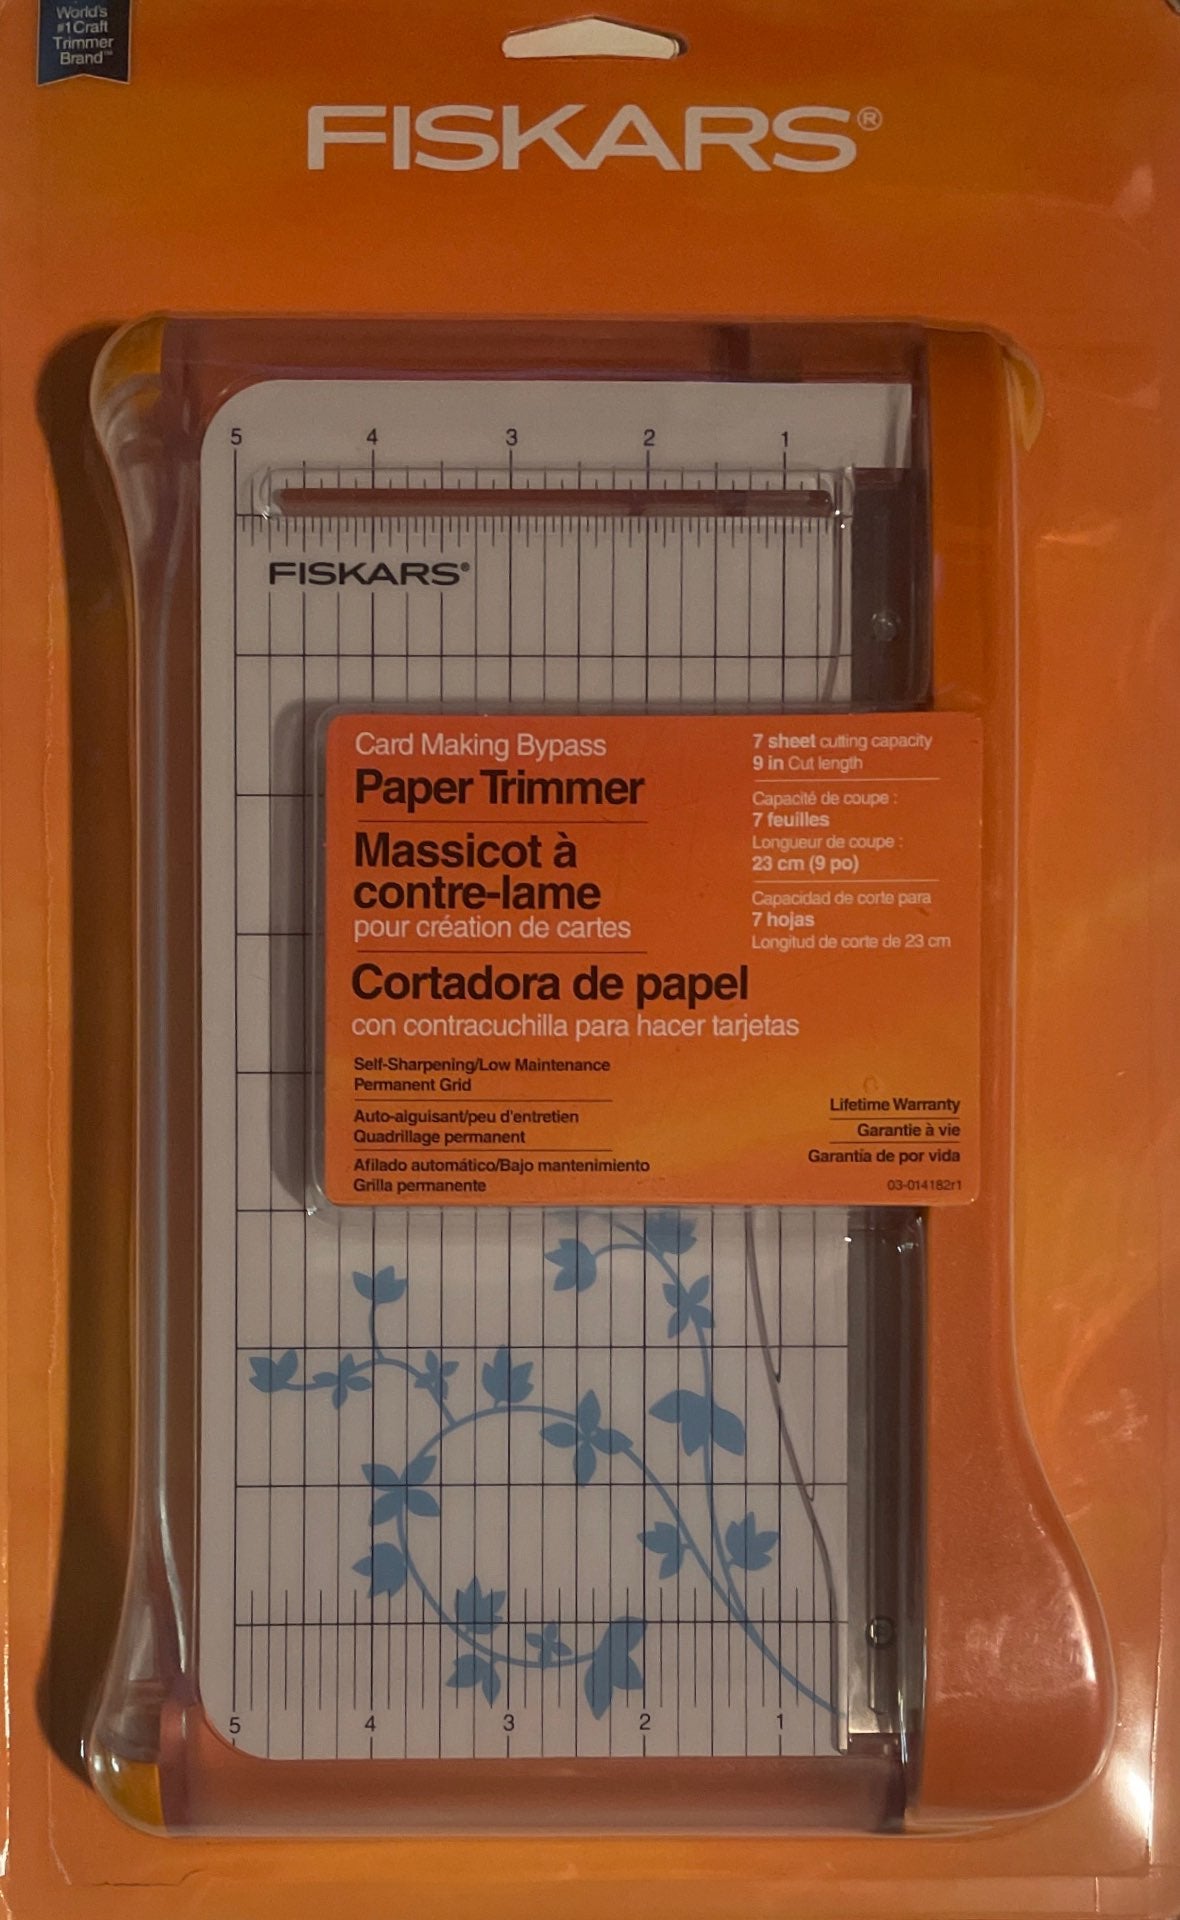 Fiskars® Card Making Bypass Paper Trimmer 